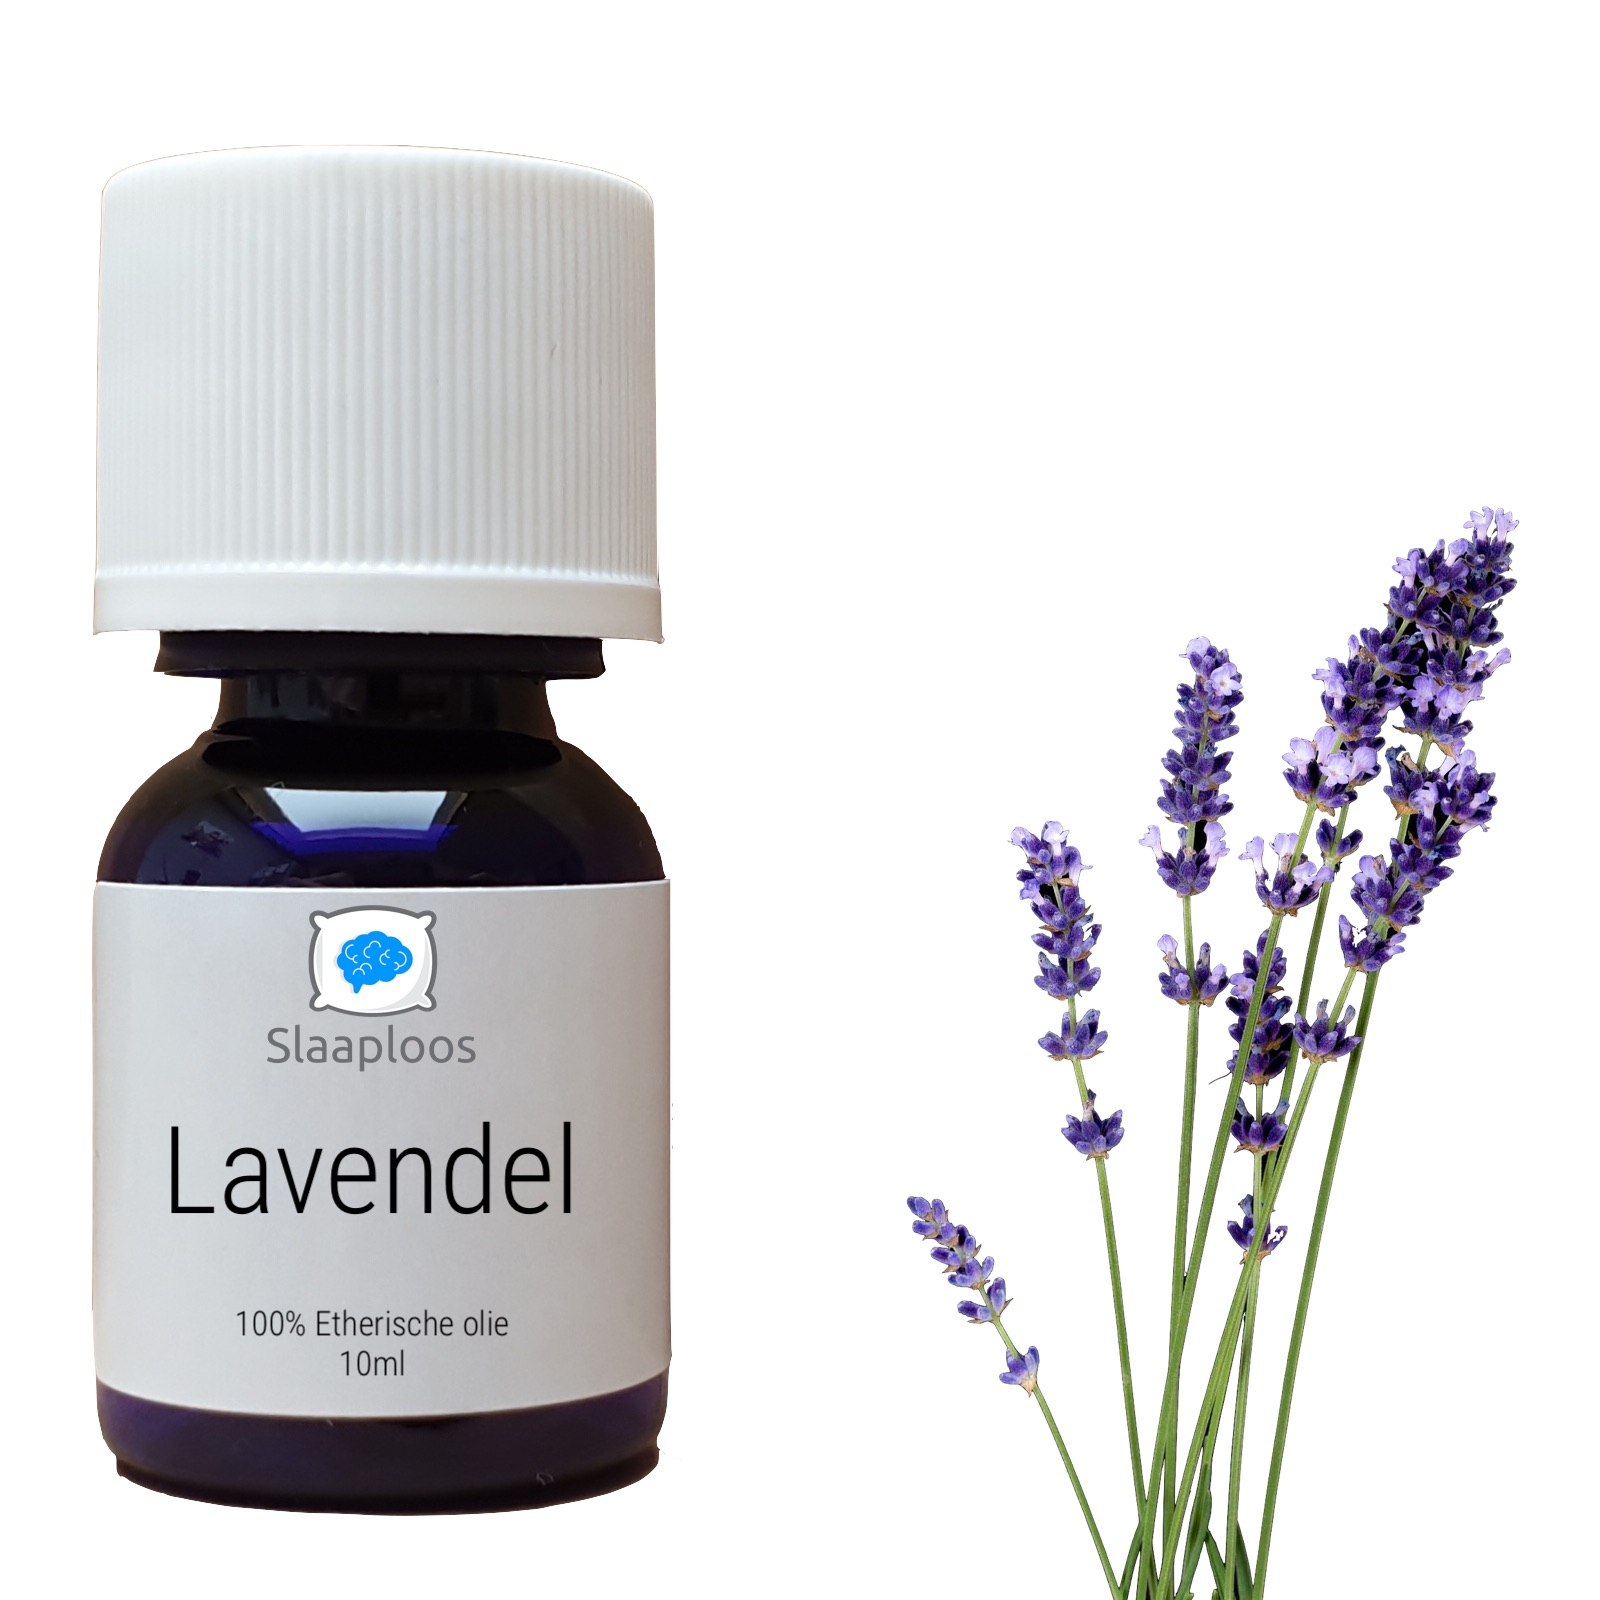 Lavendelolie - Etherische Olie Slaaploos